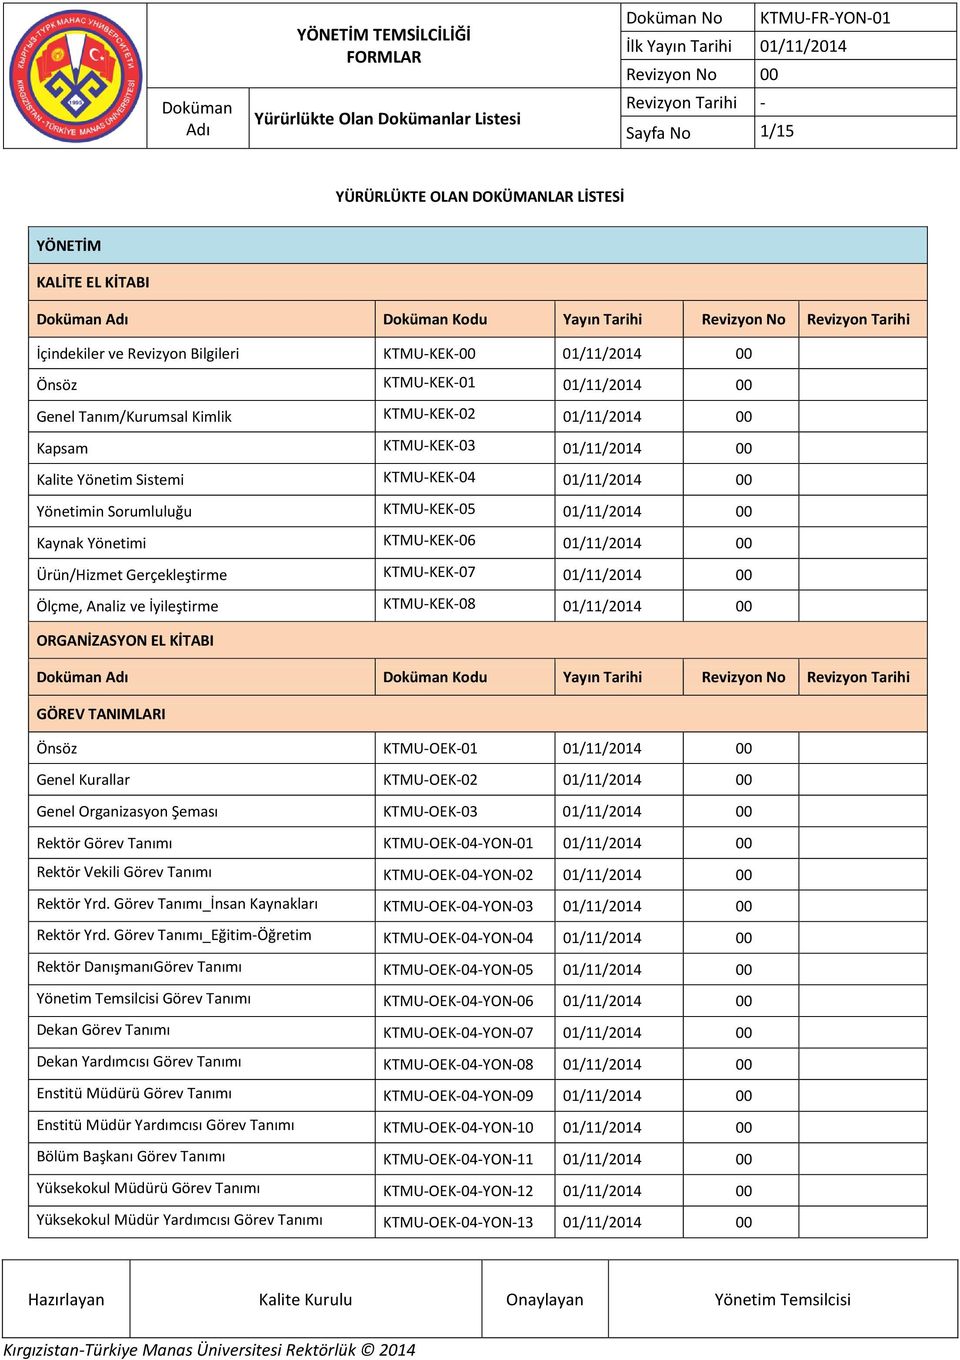 KTMU-KEK-05 01/11/2014 00 Kaynak Yönetimi KTMU-KEK-06 01/11/2014 00 Ürün/Hizmet Gerçekleştirme KTMU-KEK-07 01/11/2014 00 Ölçme, Analiz ve İyileştirme KTMU-KEK-08 01/11/2014 00 Doküman Doküman Kodu